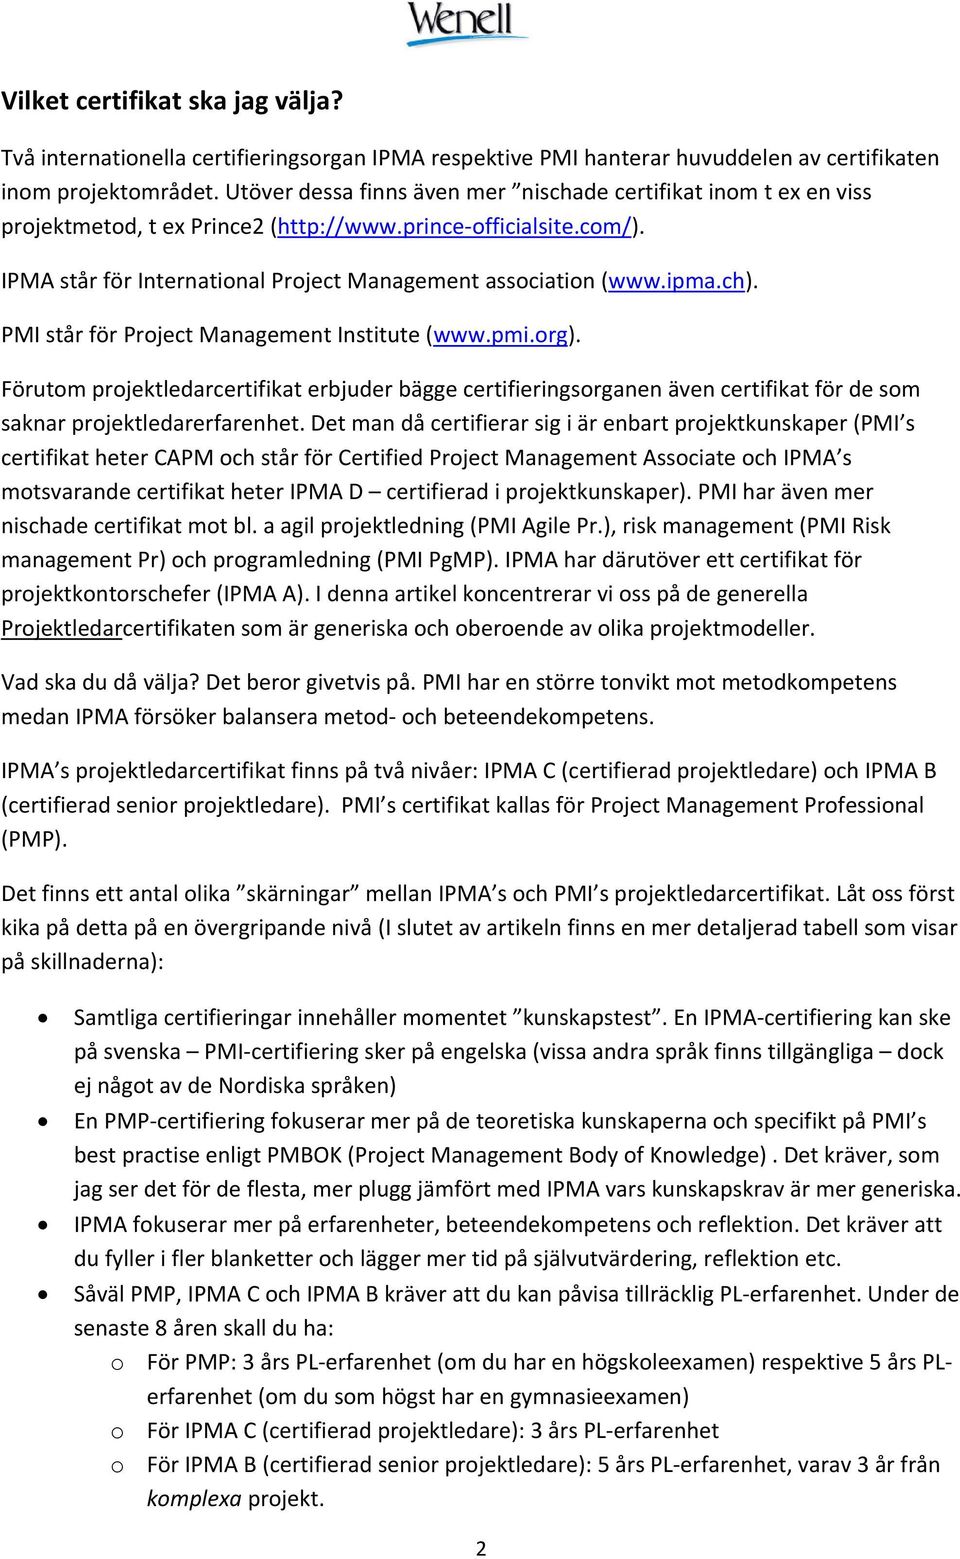 ipma.ch). PMI står för Project Management Institute (www.pmi.org). Förutom projektledarcertifikat erbjuder bägge certifieringsorganen även certifikat för de som saknar projektledarerfarenhet.